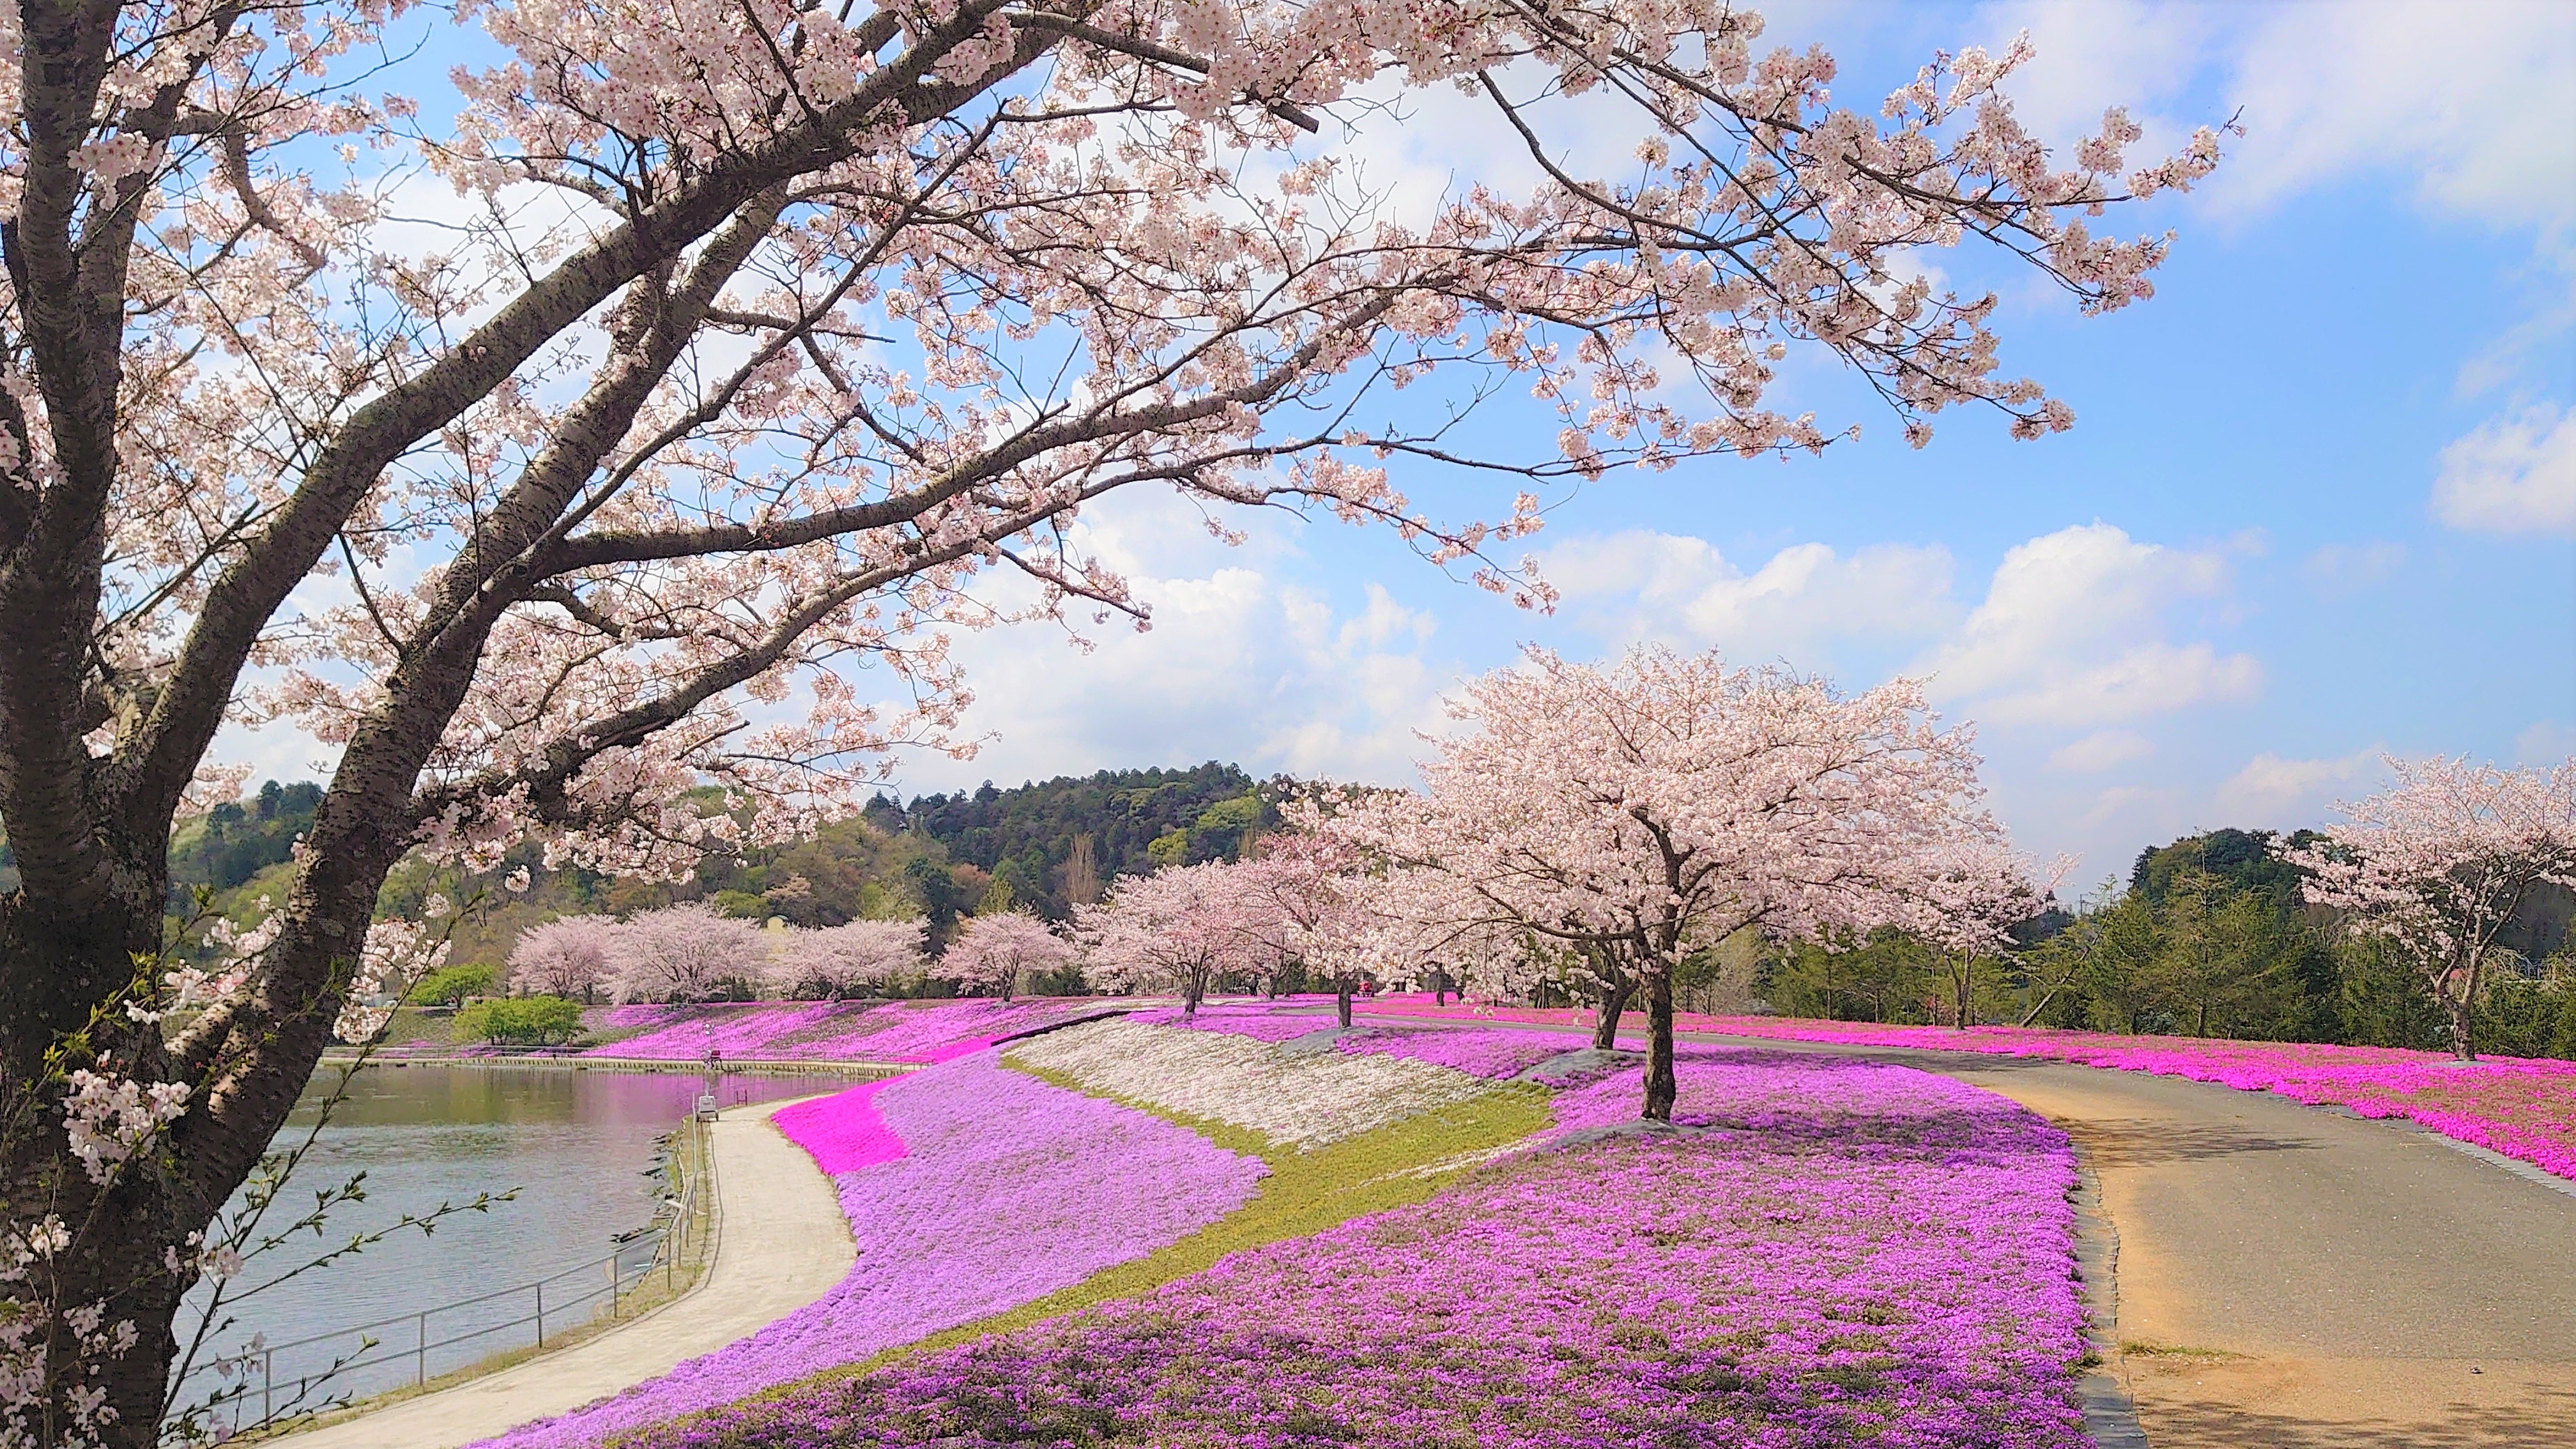 3月下旬より春の花々が東京ドイツ村を彩ります